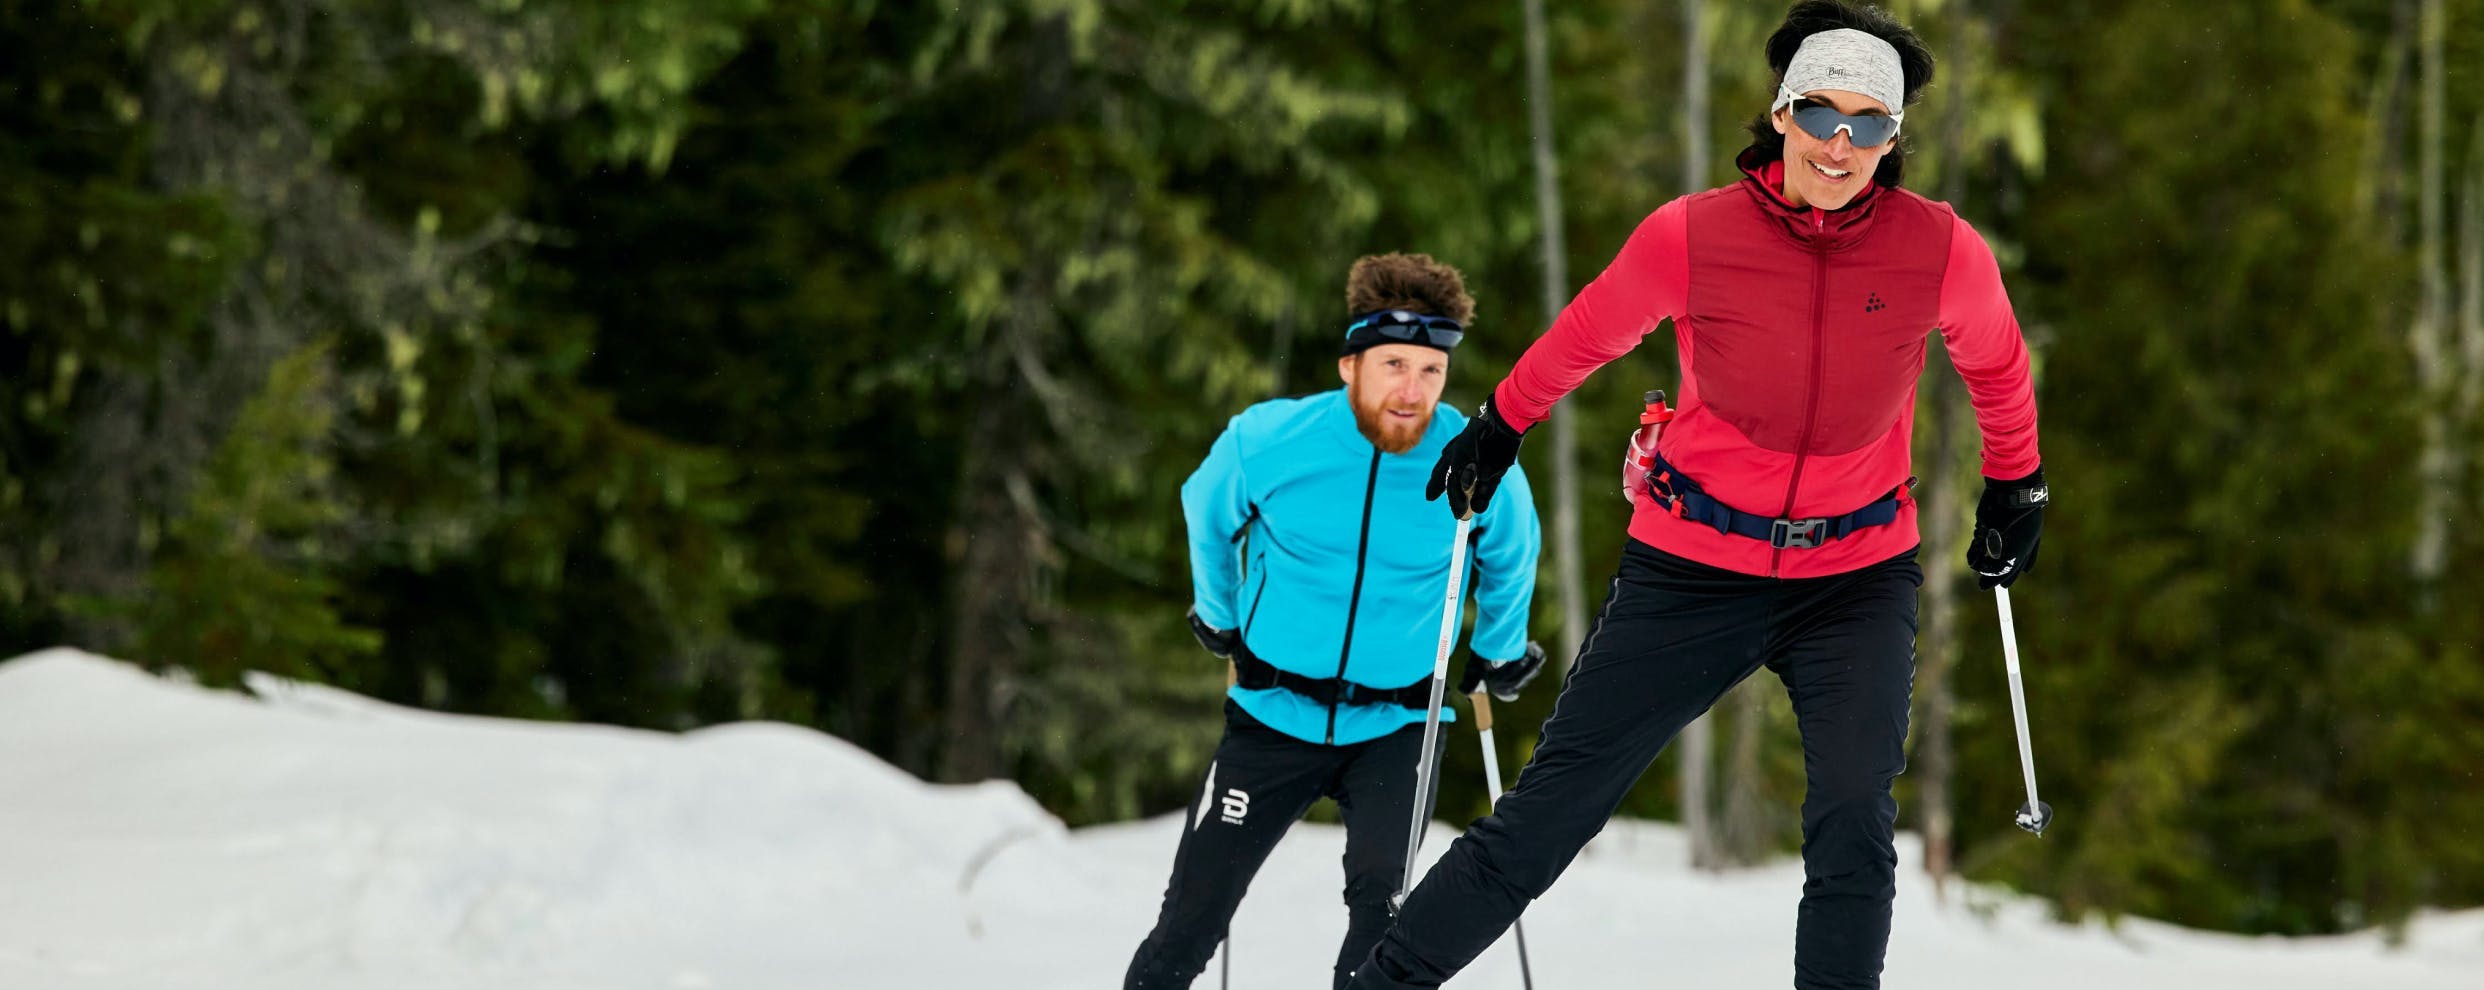 La saison de ski de fond est arrivée. Équipez-vous pour les sentiers ou les pistes avec des bottes, des farts et plus.